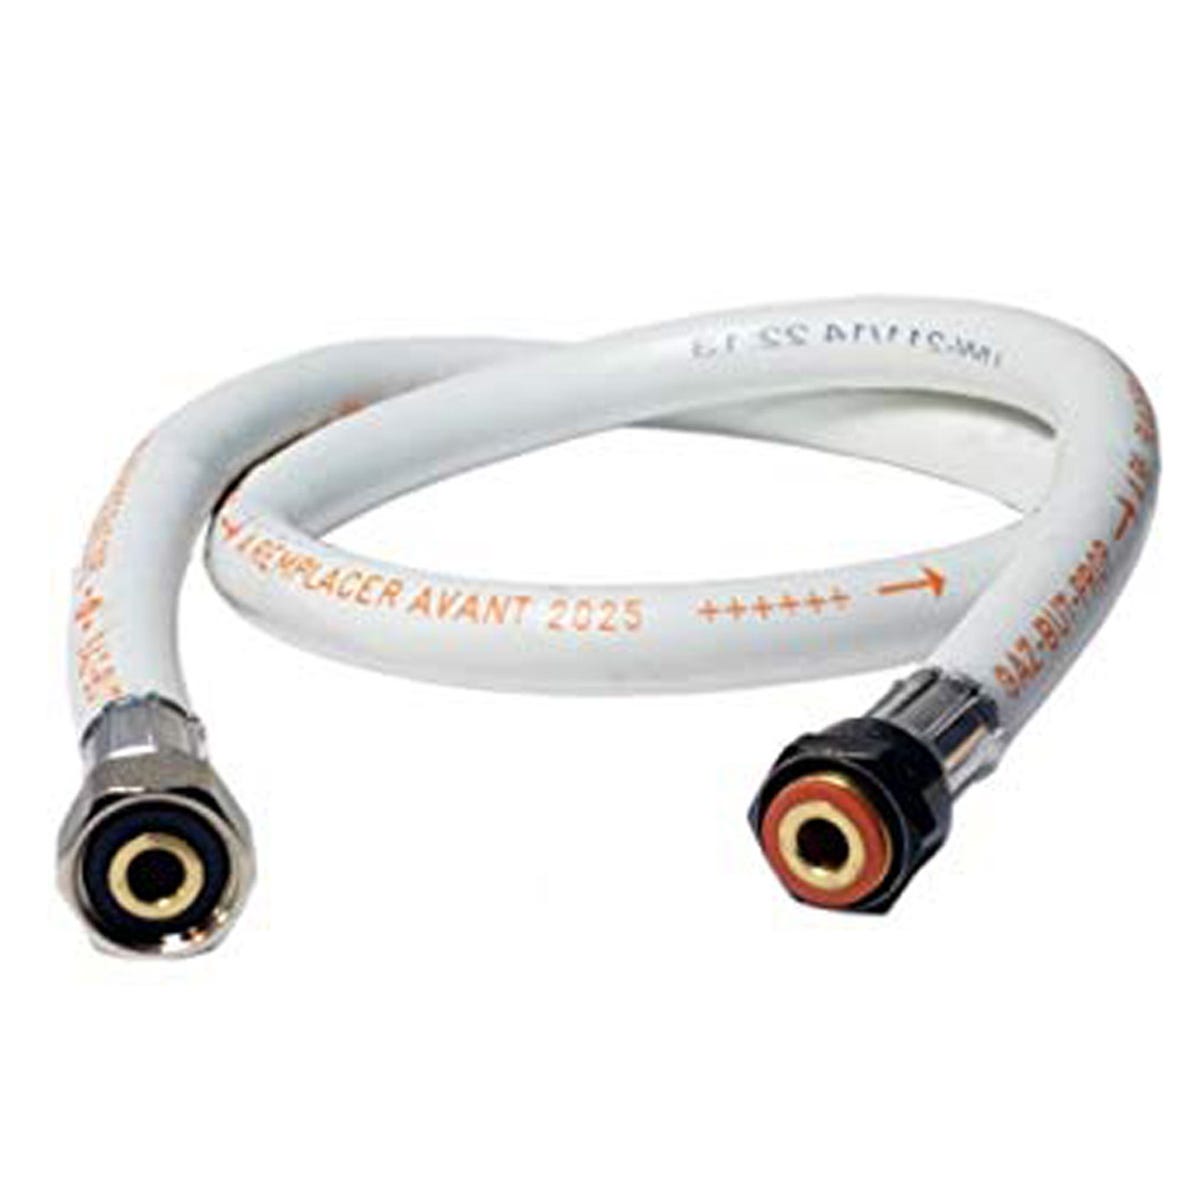 Pack tuyau gaz flexible 1.50 m + Détendeur Butane à clipser Quick-On Valve Diam 27mm BUTAGAZ Avec Sécurité stop gaz 2